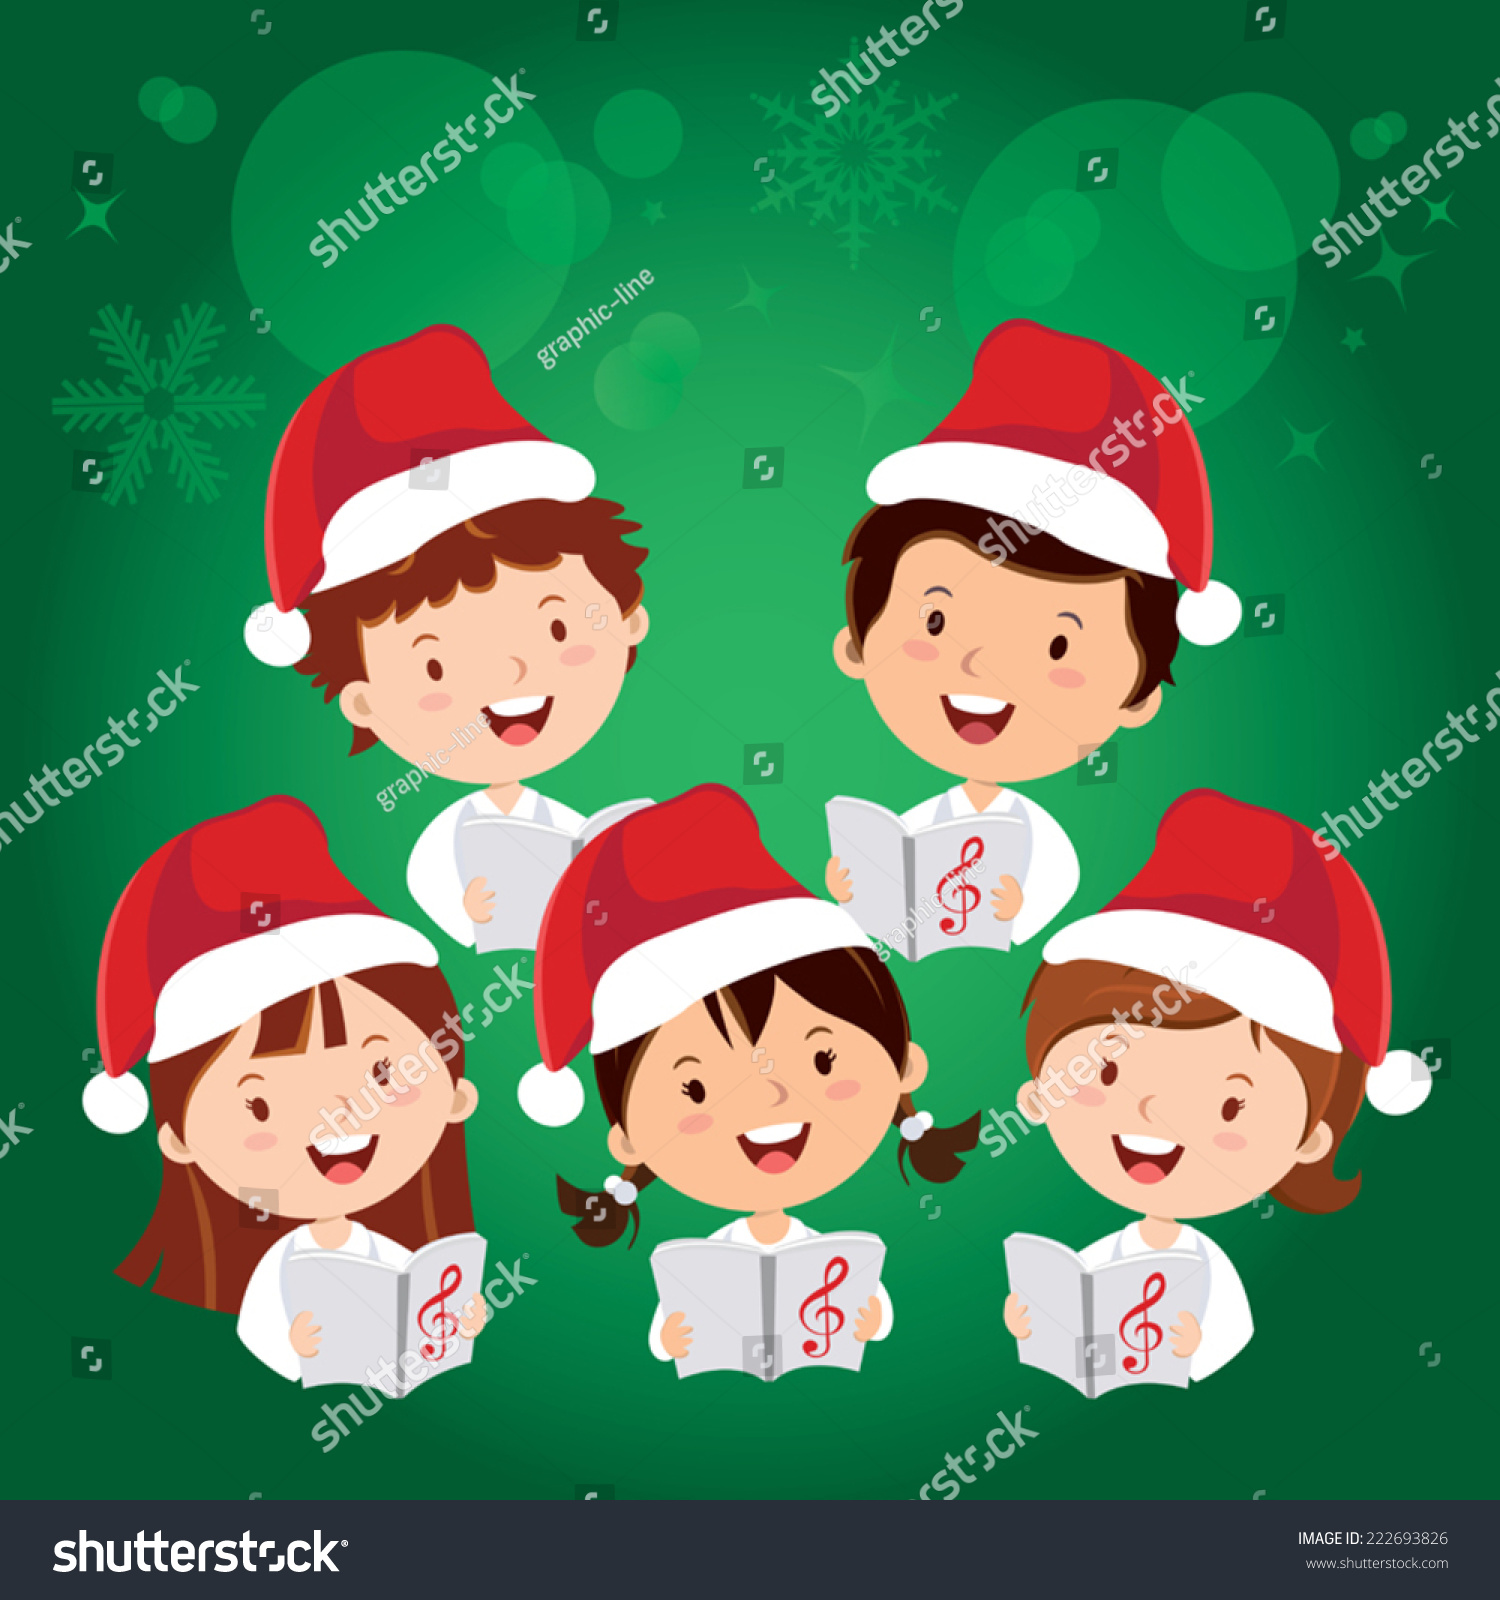 Merry Christmas Songs. Children Christmas Choir. Stock Vector Illustration 222693826 : Shutterstock